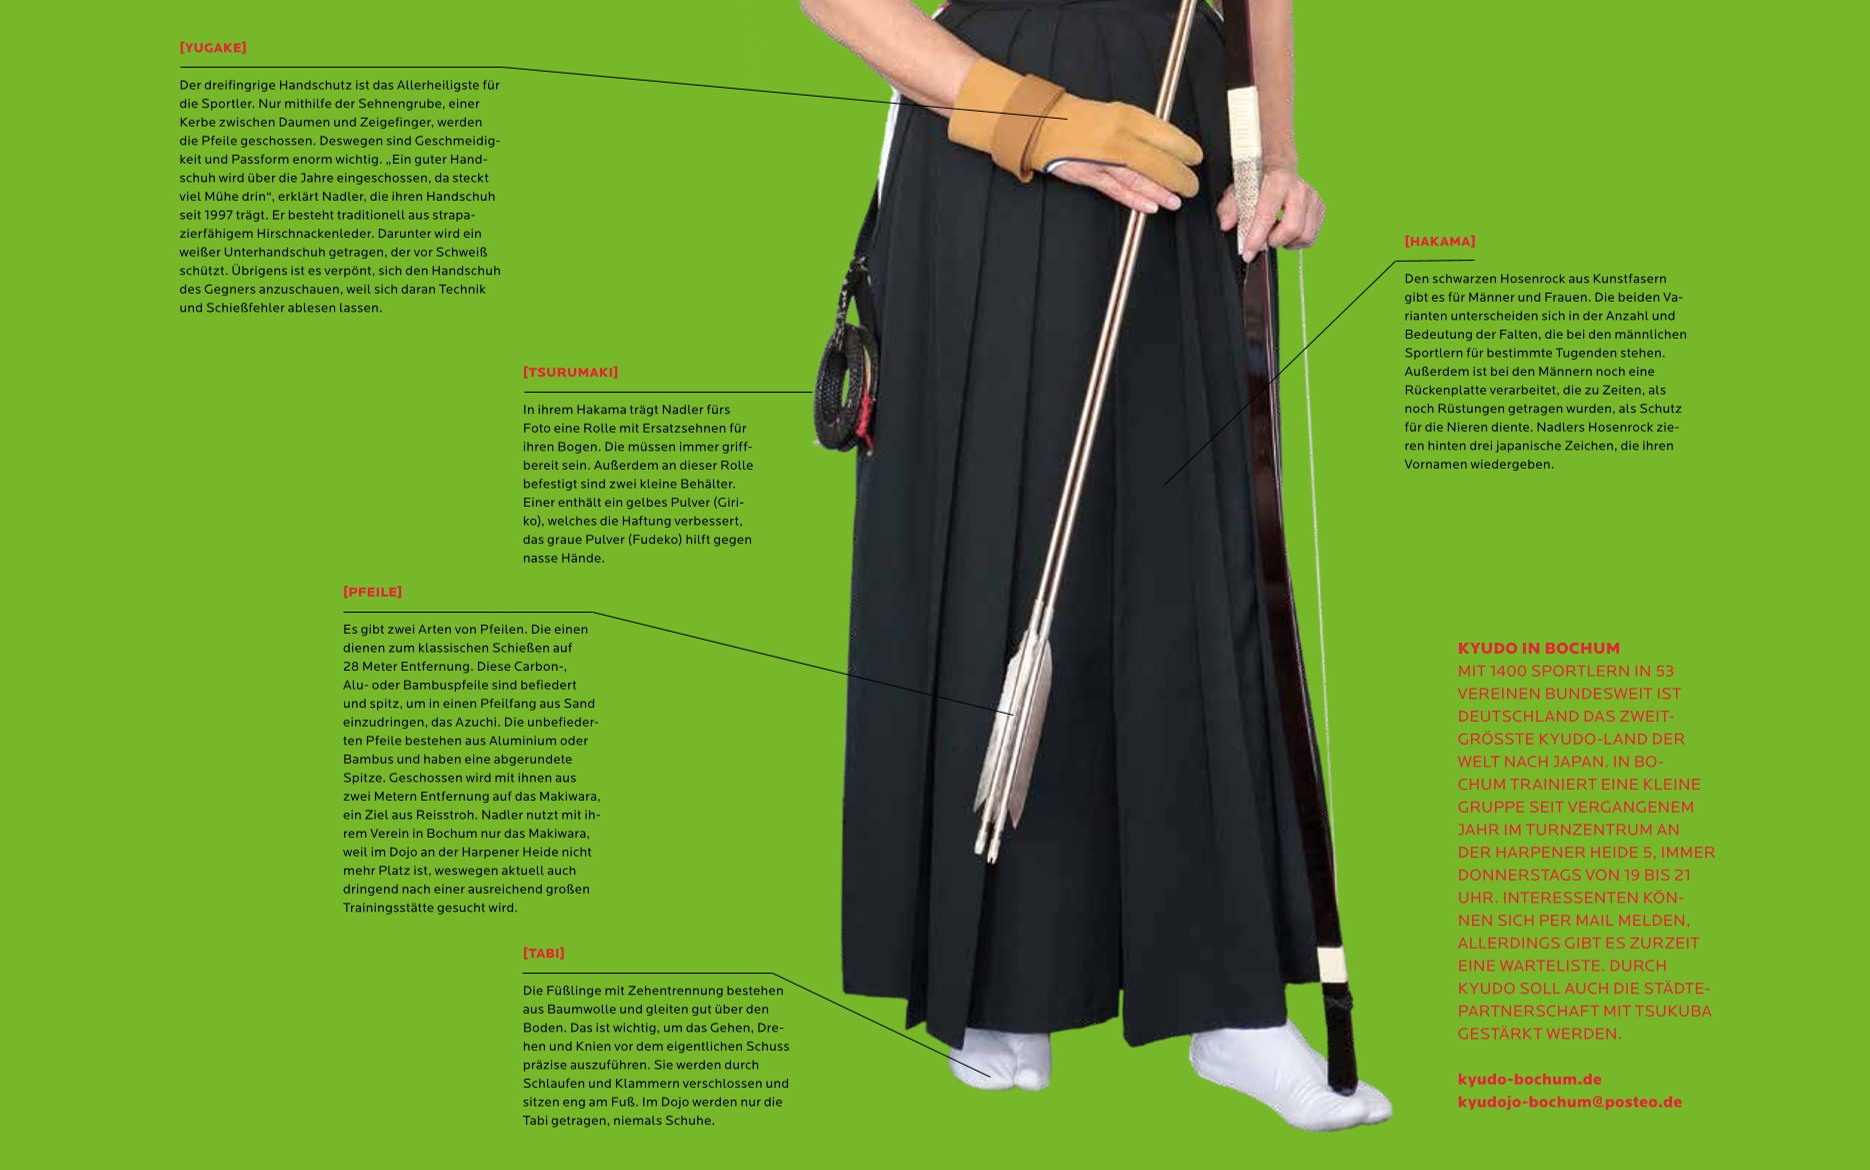 Artikel aus der BOMA mit Bild von Monika Nadler im Vordergrund in der traditionellen Kyodo-Bekleidung mit Bogen, Pfeilen und Handschuh